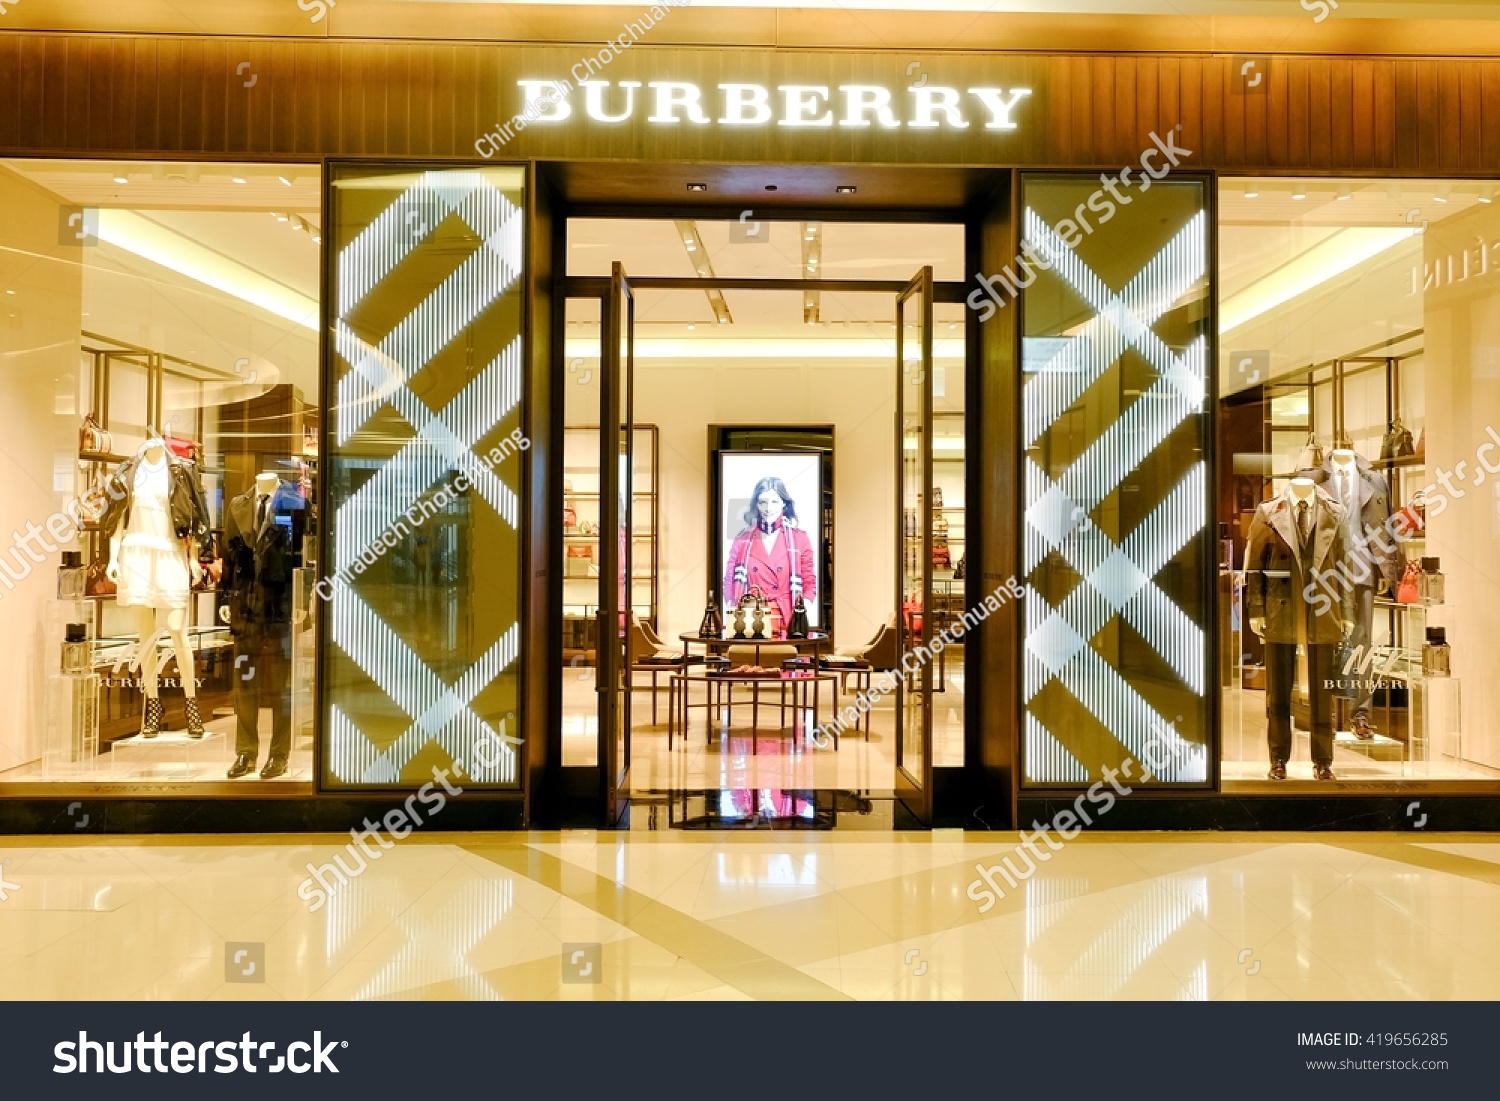 burberry paragon